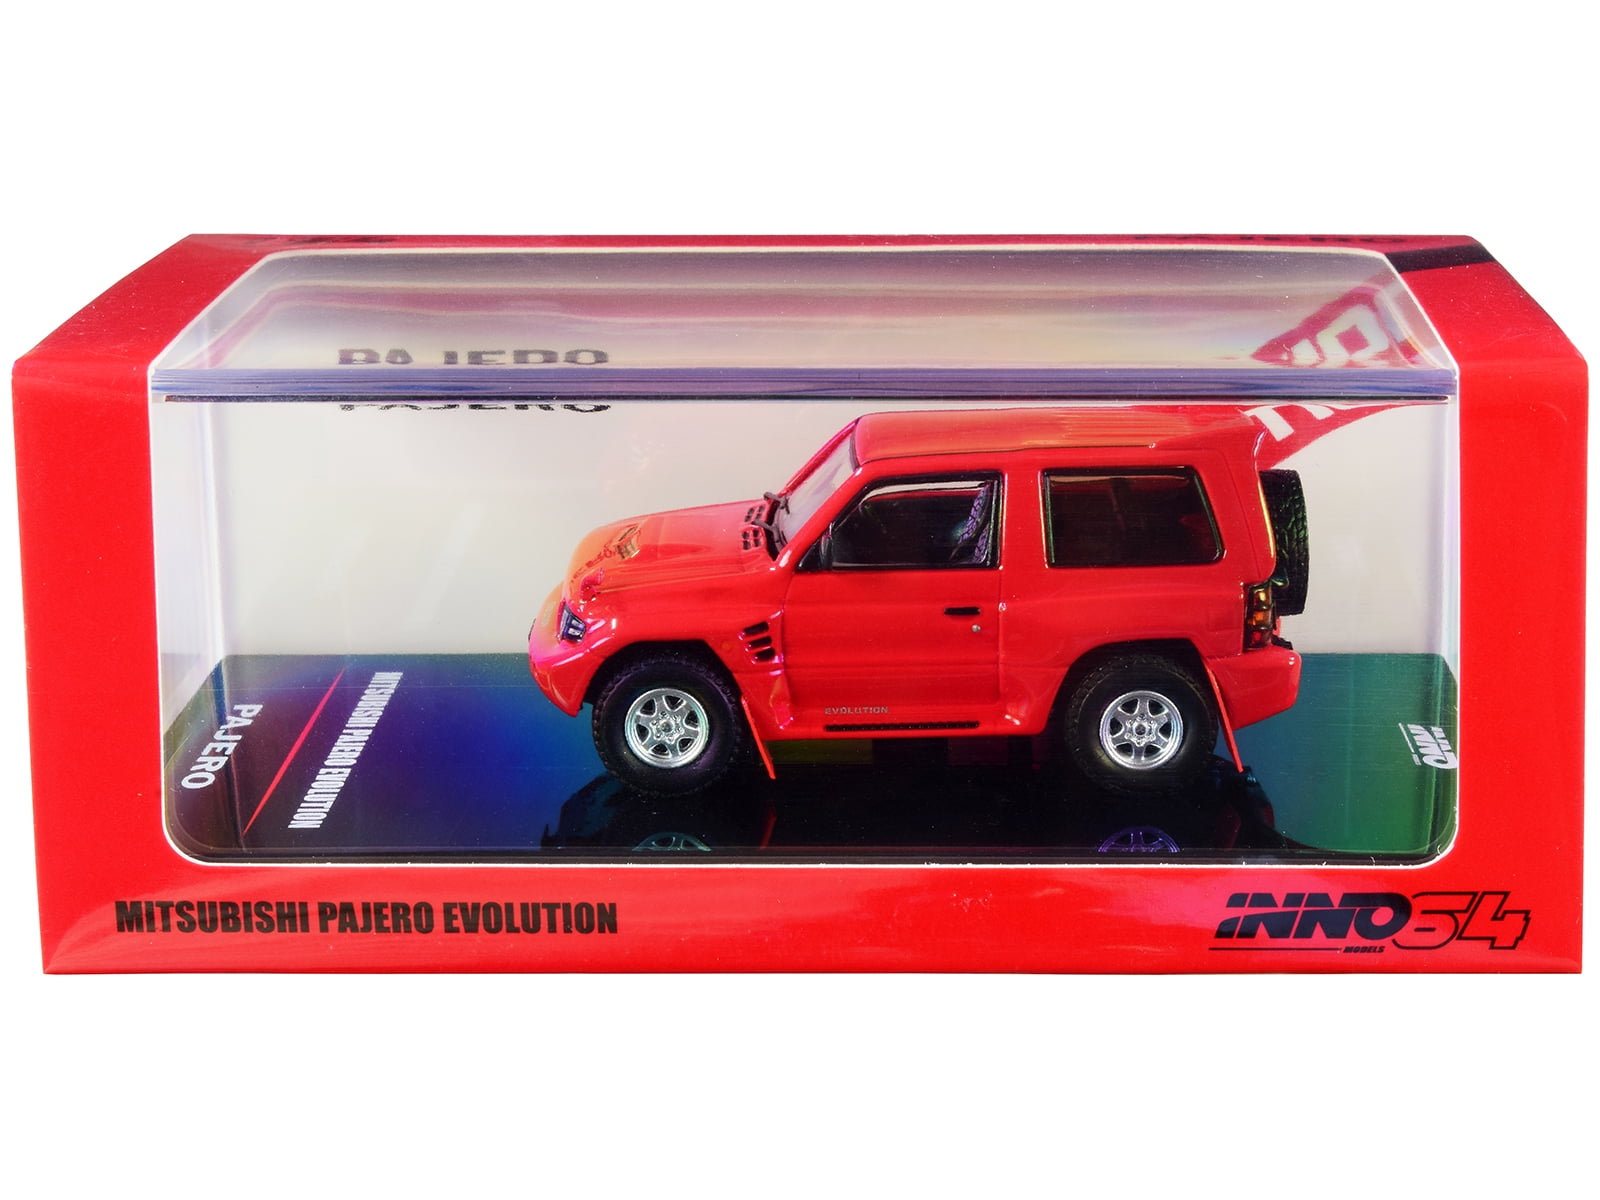 Mitsubishi Pajero Evolution 1:64 scale Diecast Model Car in Red by Inno 64